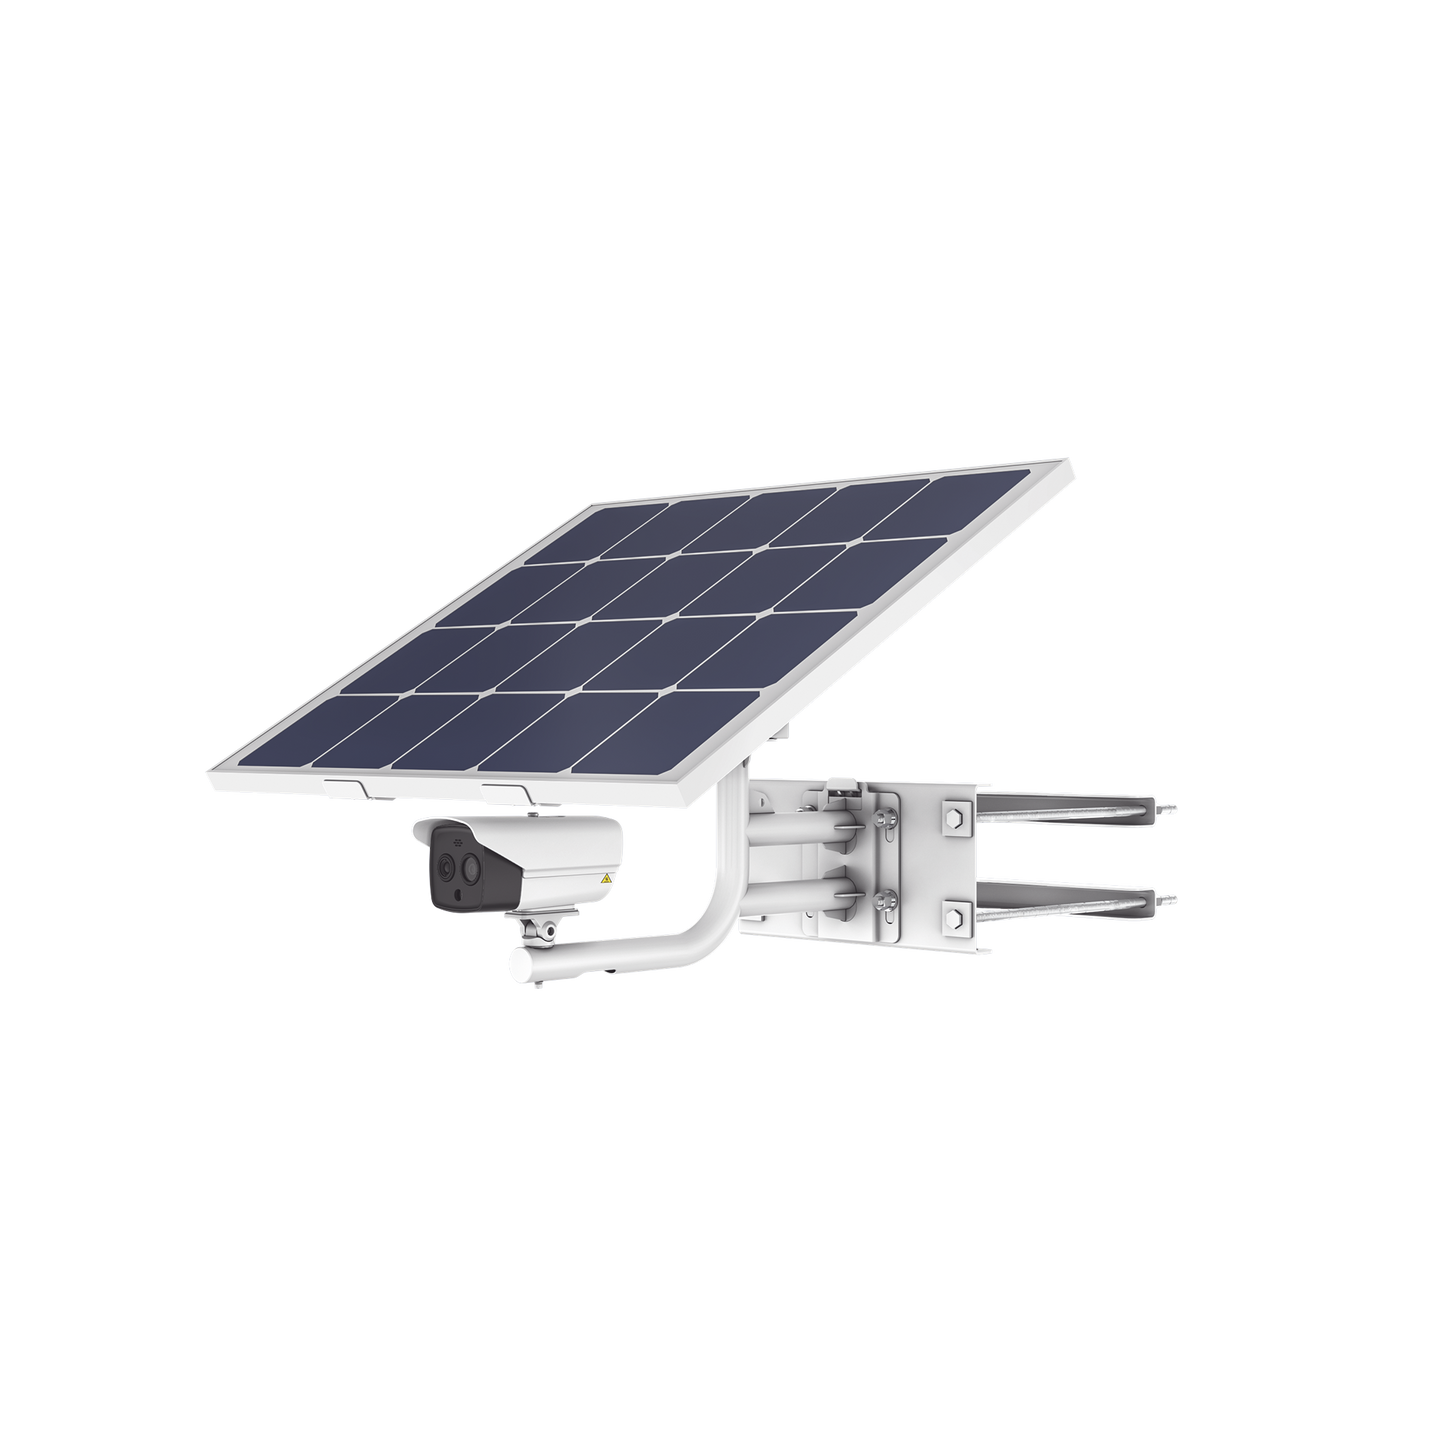 Kit Solar IP All in One / Cámara Termica 256 × 192 / Lente 9.7mm / Panel Solar / Batería de Respaldo de Litio 23.2Ah / Conexión 4G / Accesorios de Instalación